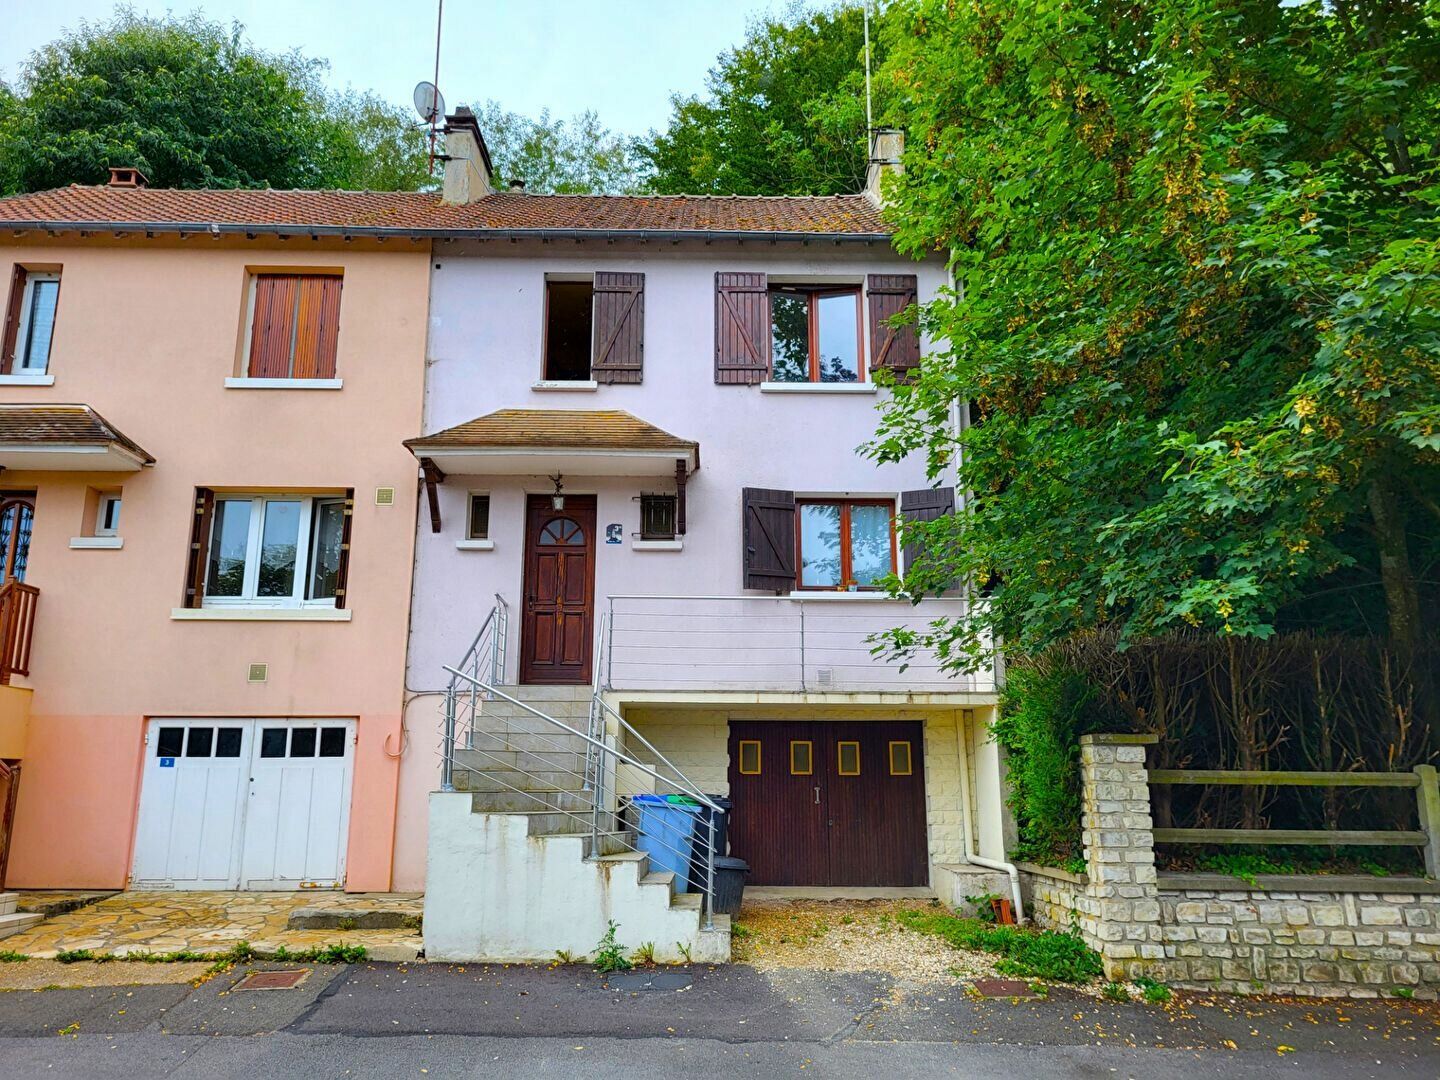 Maison à vendre 4 70m2 à Droue-sur-Drouette vignette-1